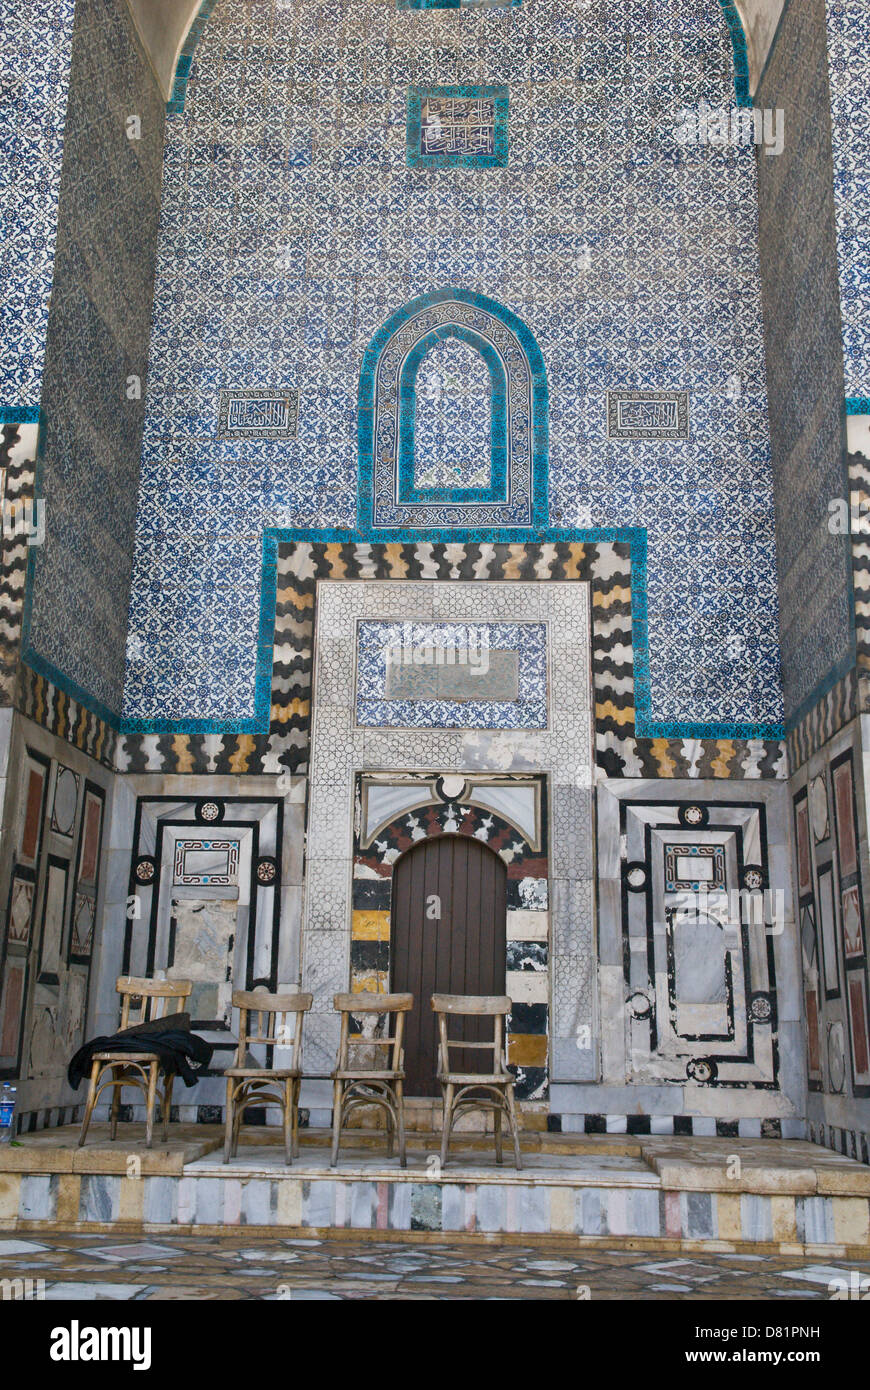 Beitt (Bait) Joumblatt, Alep, Syrie. Le portique - iwan - d'un ancien palais ottoman du 16ème siècle avec des carreaux de céramique géométrique. Banque D'Images